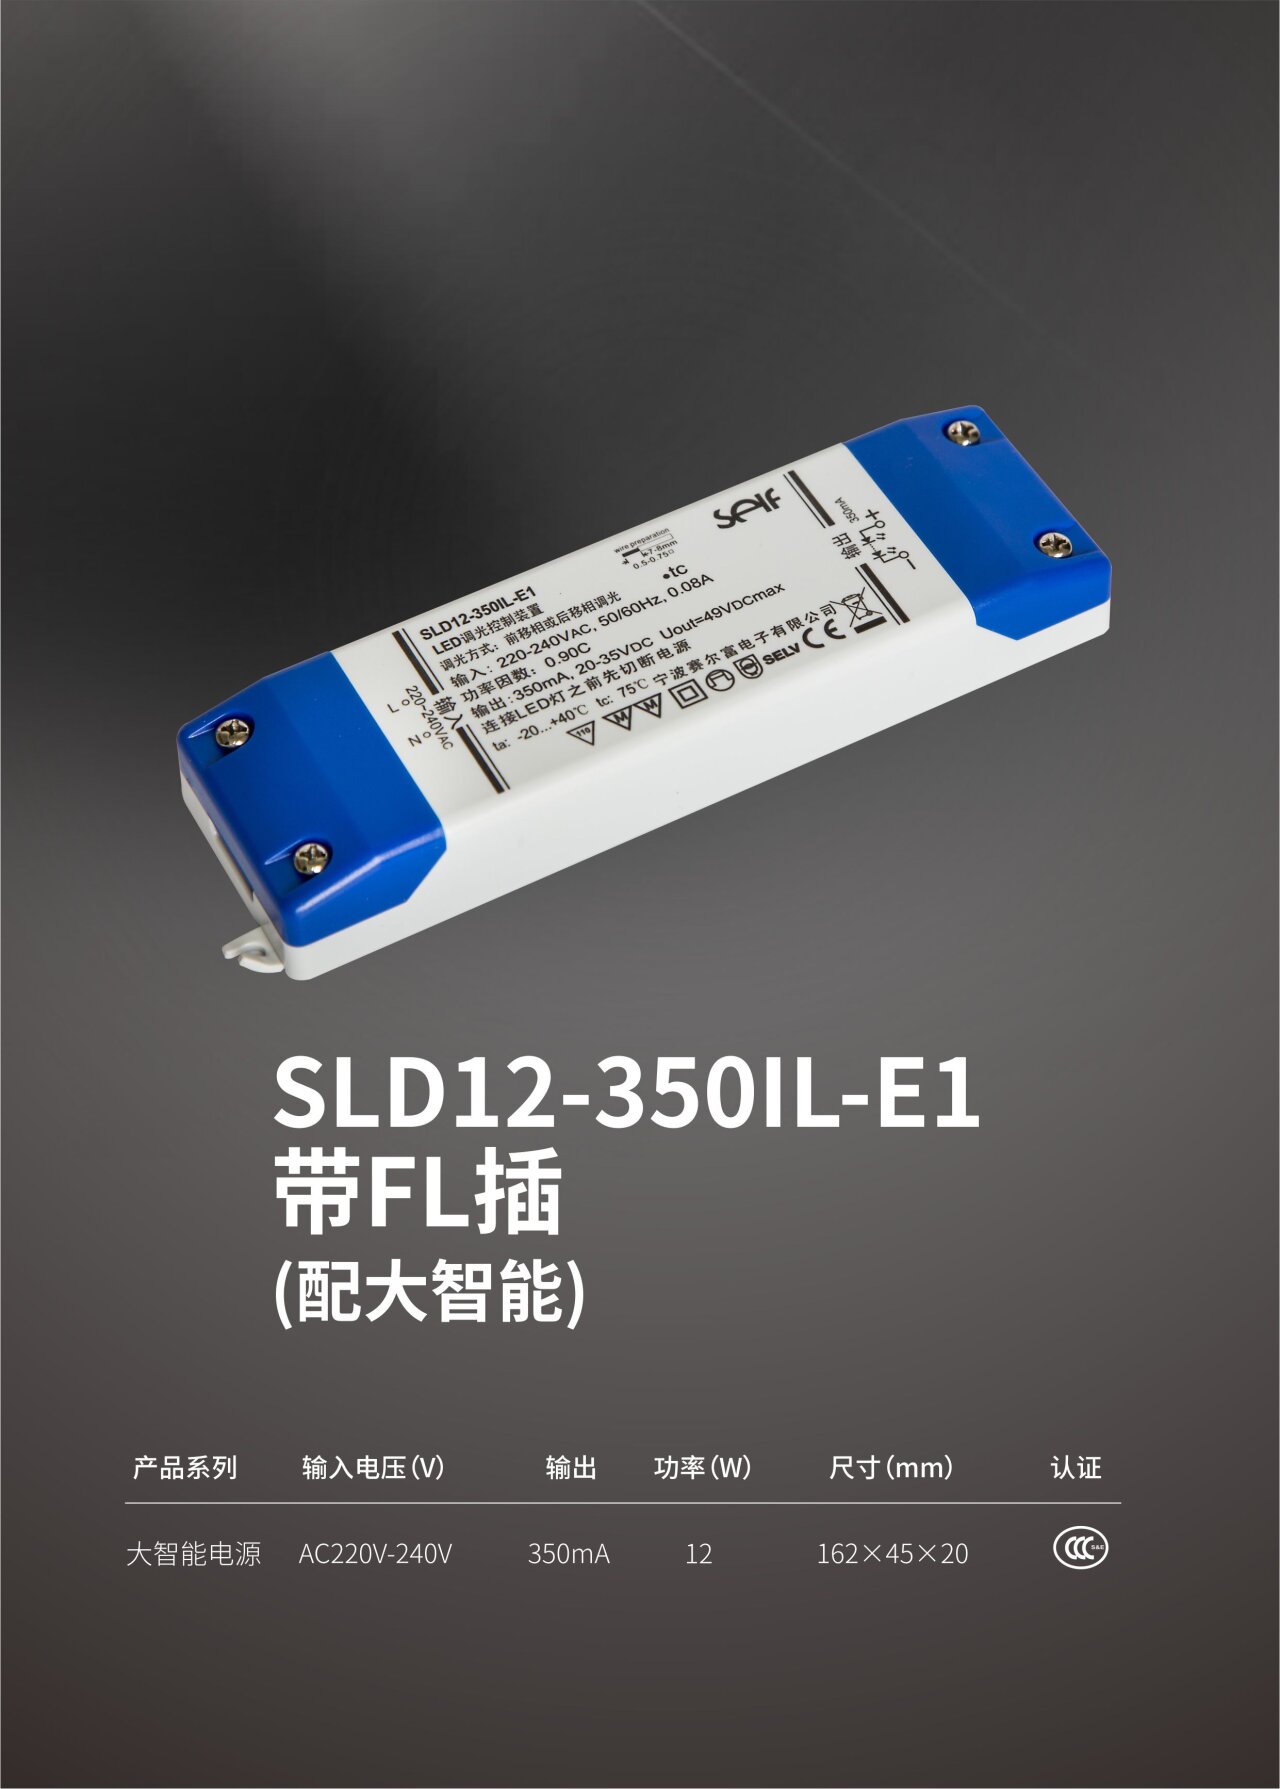 SLD12-350IL-E1,